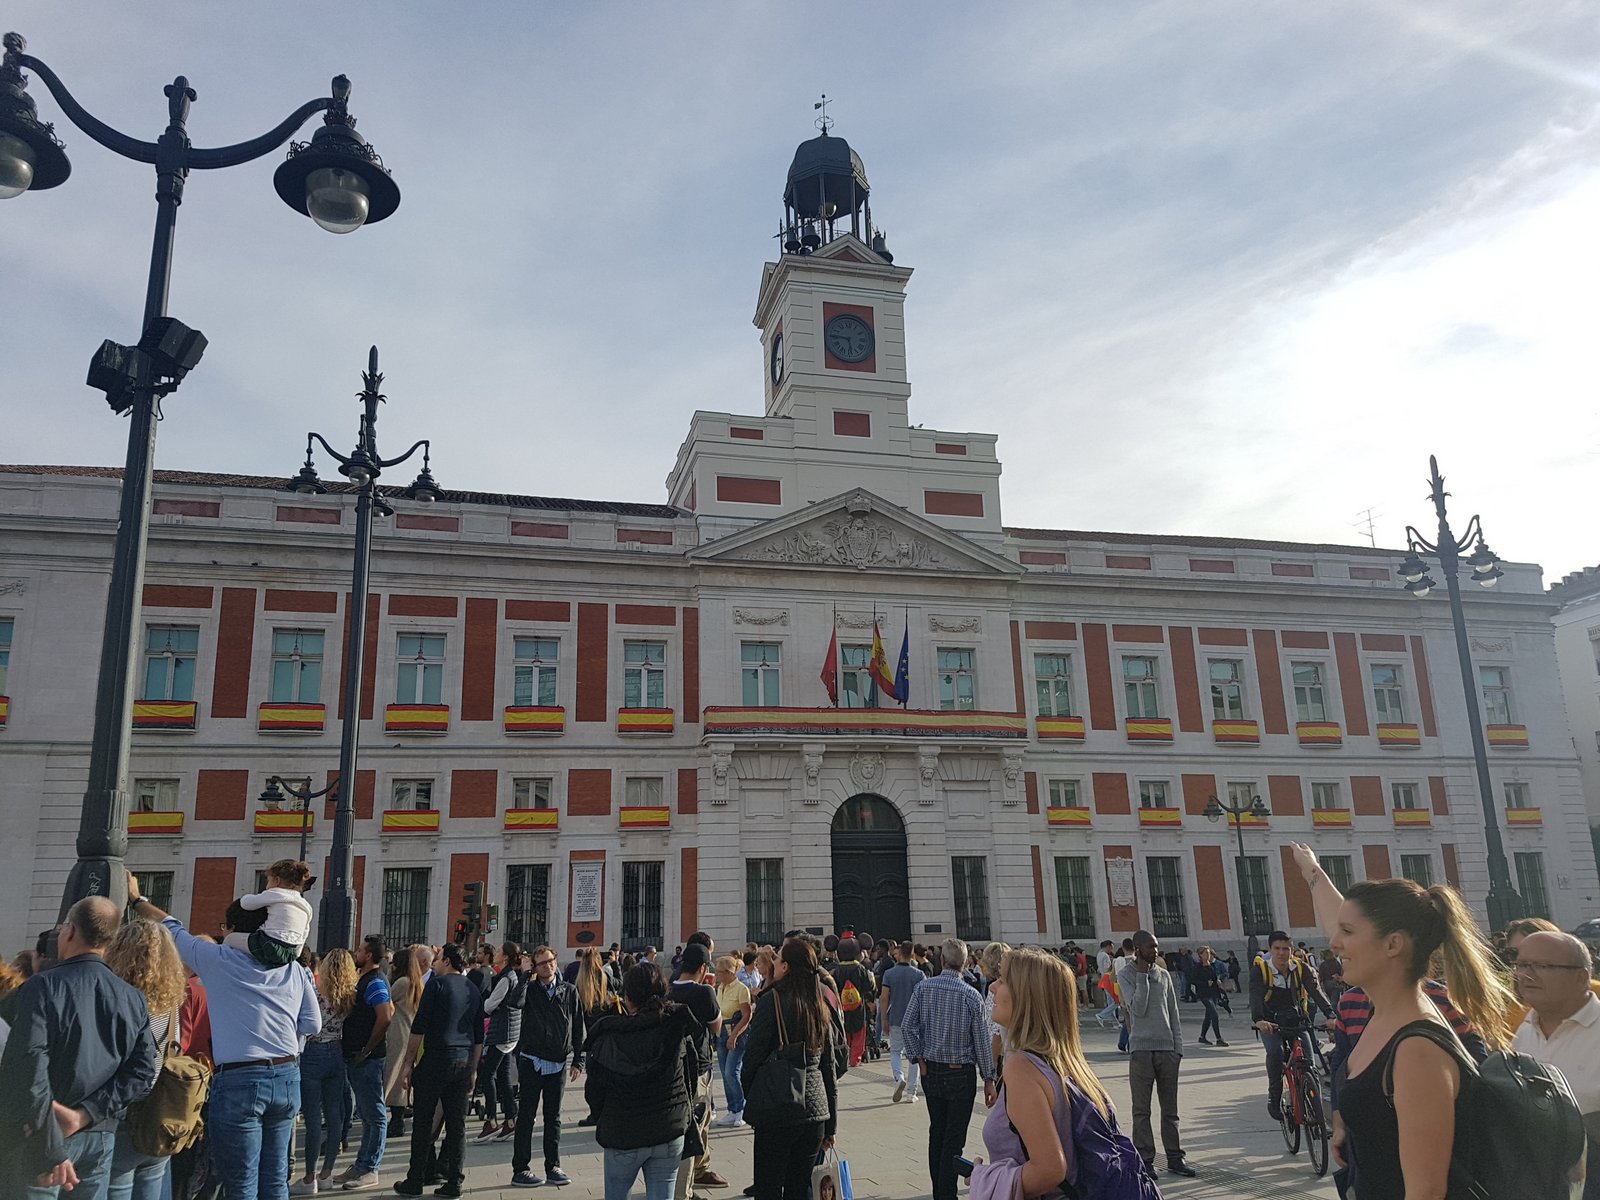 מדריד - ארבעה ימים בבירת ספרד, מדריד, המלצות, טיפים, מדריך, Madrid